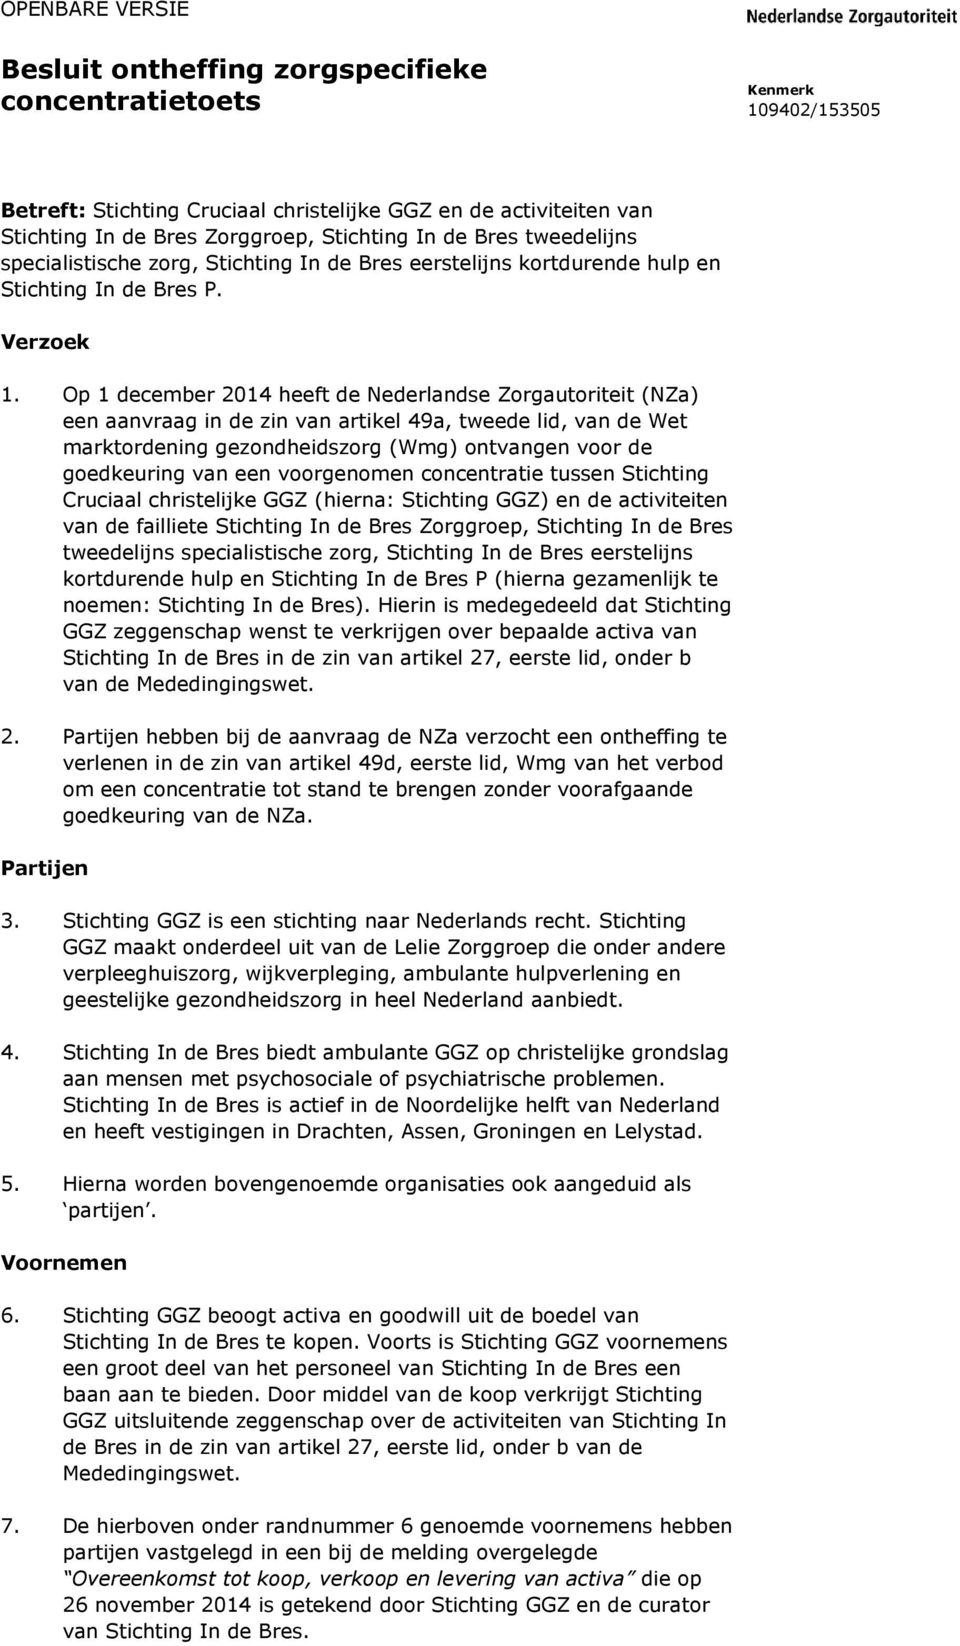 Op 1 december 2014 heeft de Nederlandse Zorgautoriteit (NZa) een aanvraag in de zin van artikel 49a, tweede lid, van de Wet marktordening gezondheidszorg (Wmg) ontvangen voor de goedkeuring van een